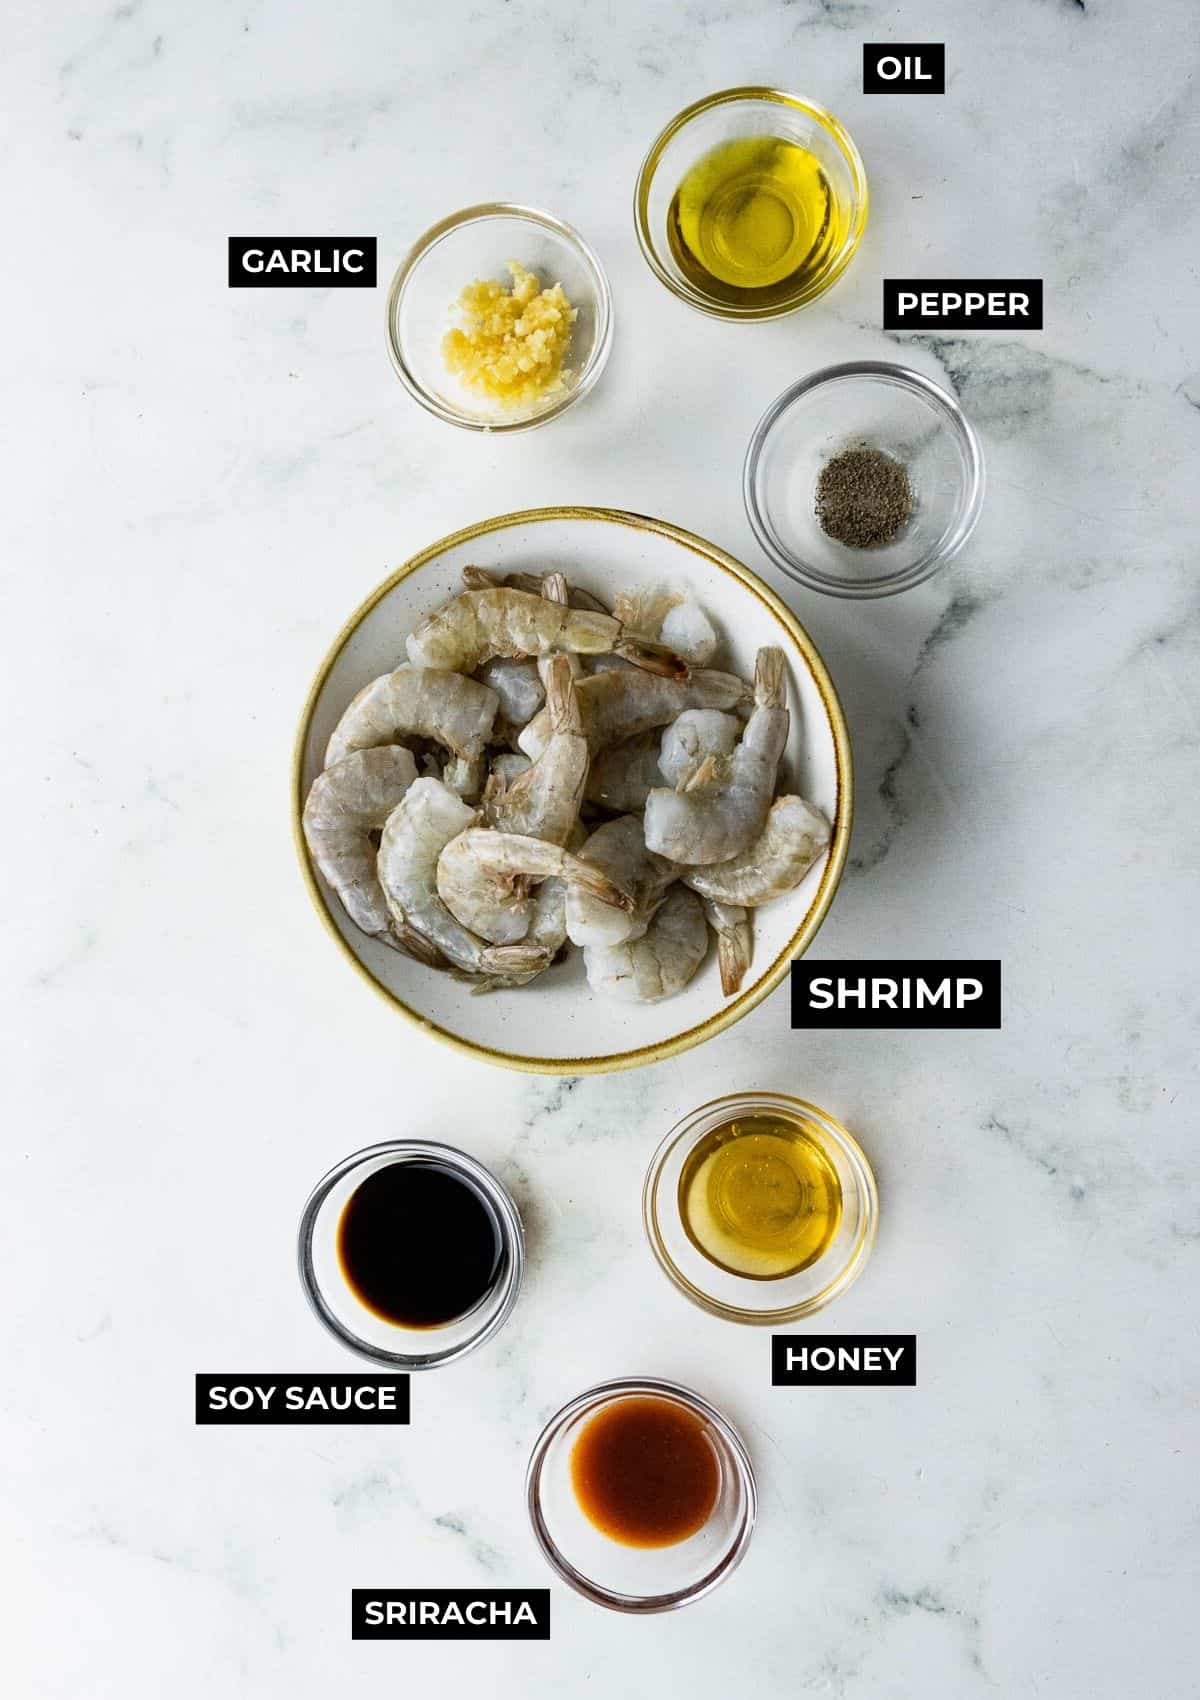 Ingredients for this shrimp recipe.